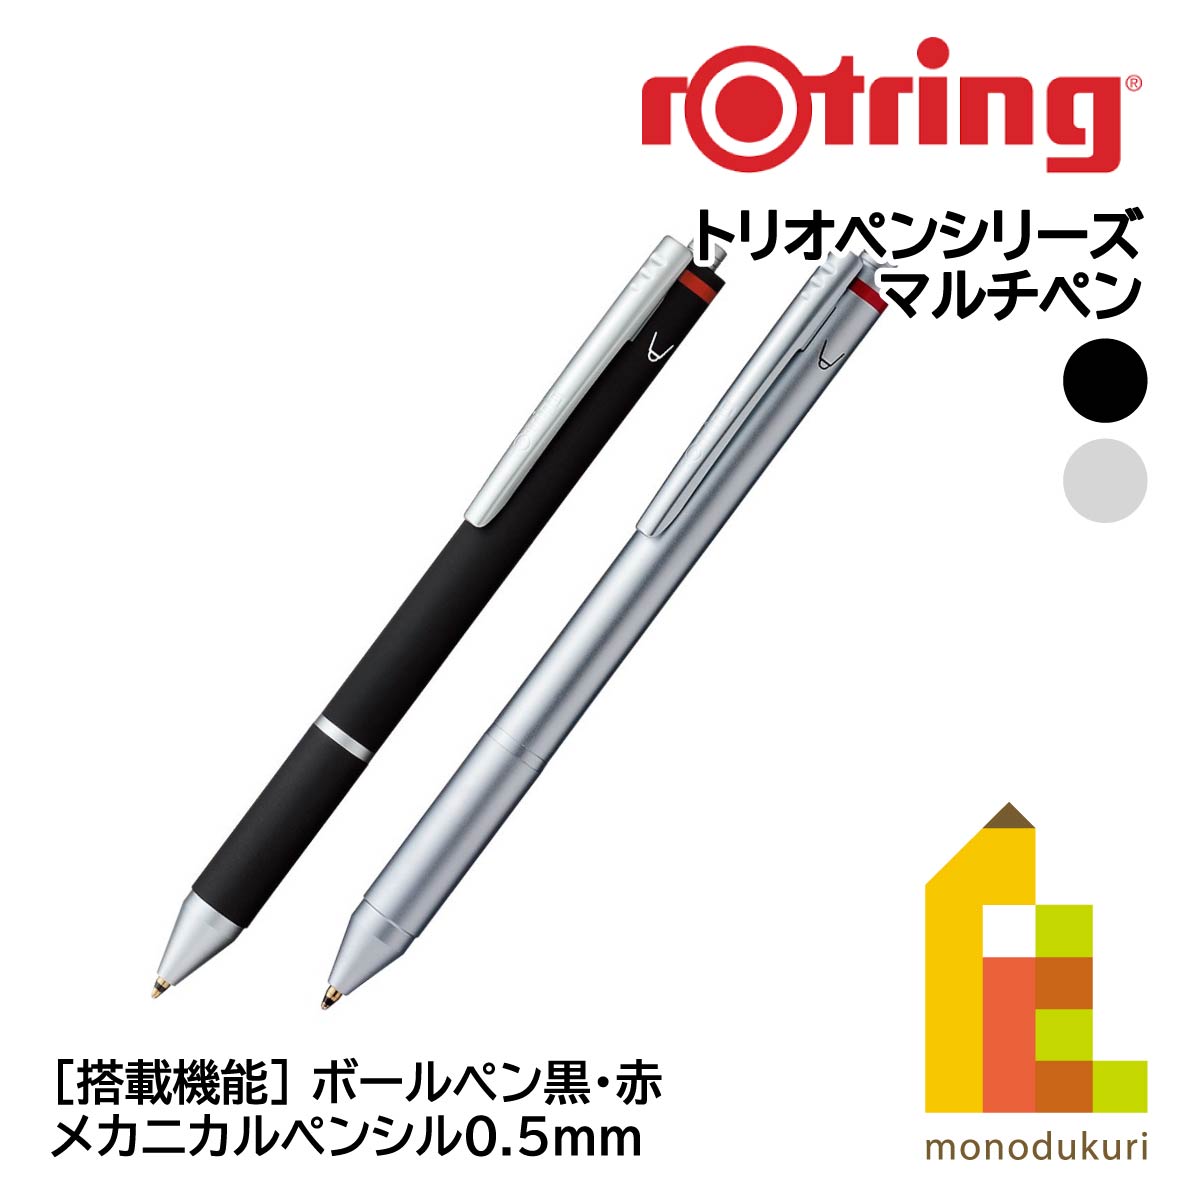  rotring Trio авторучка ( мульти- авторучка ) шариковая ручка чёрный * красный / механический авторучка порог двери 0.5mm [ черный / серебряный ]